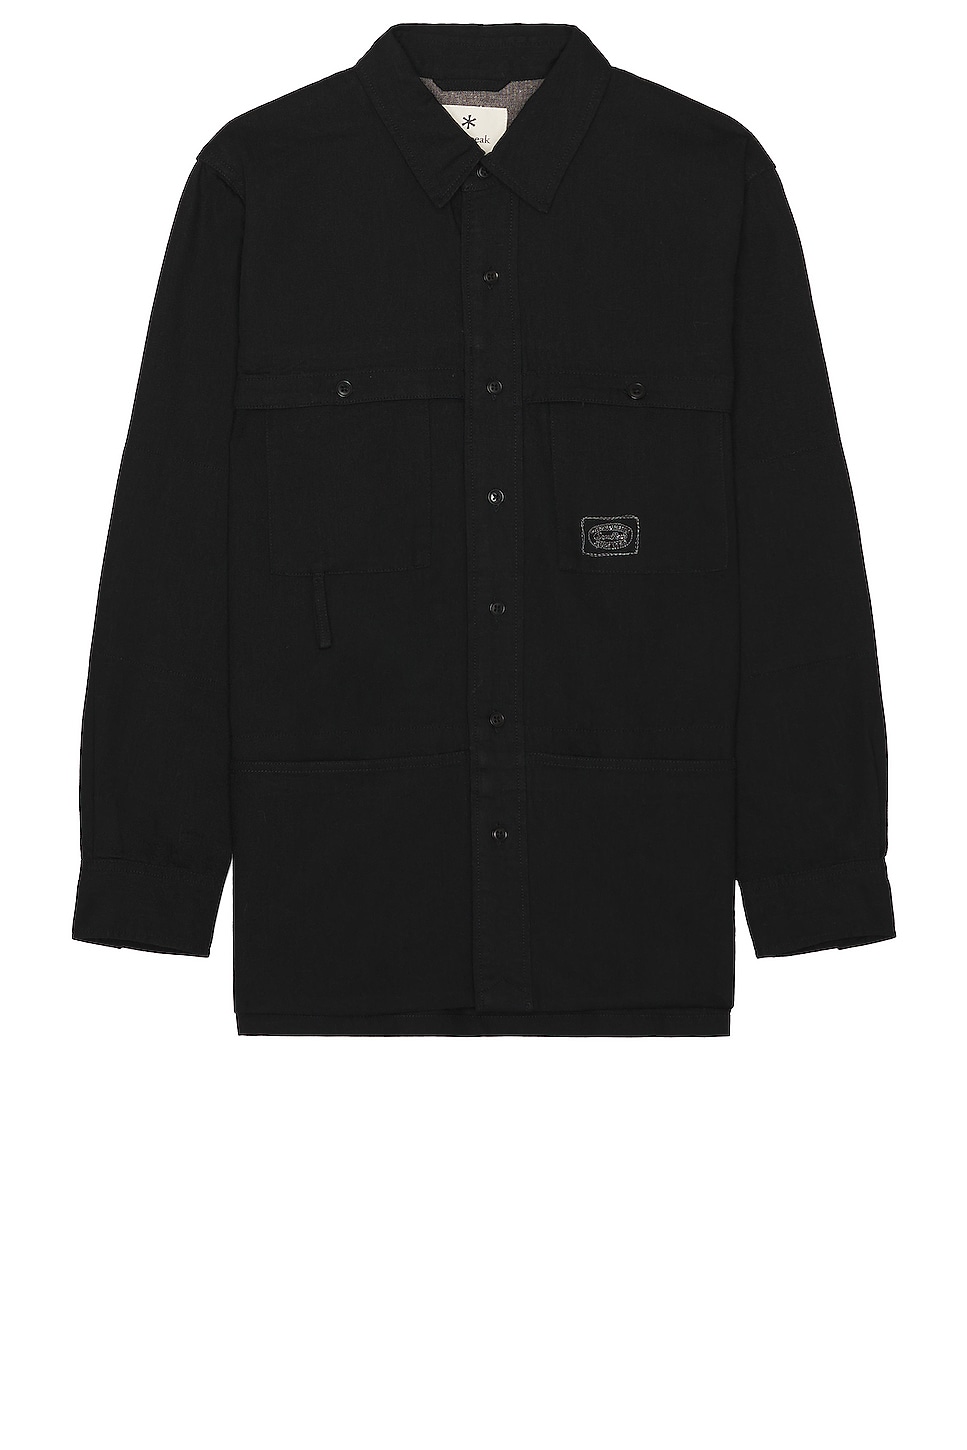 TAKIBI Light Denim Utility Shirt in Black